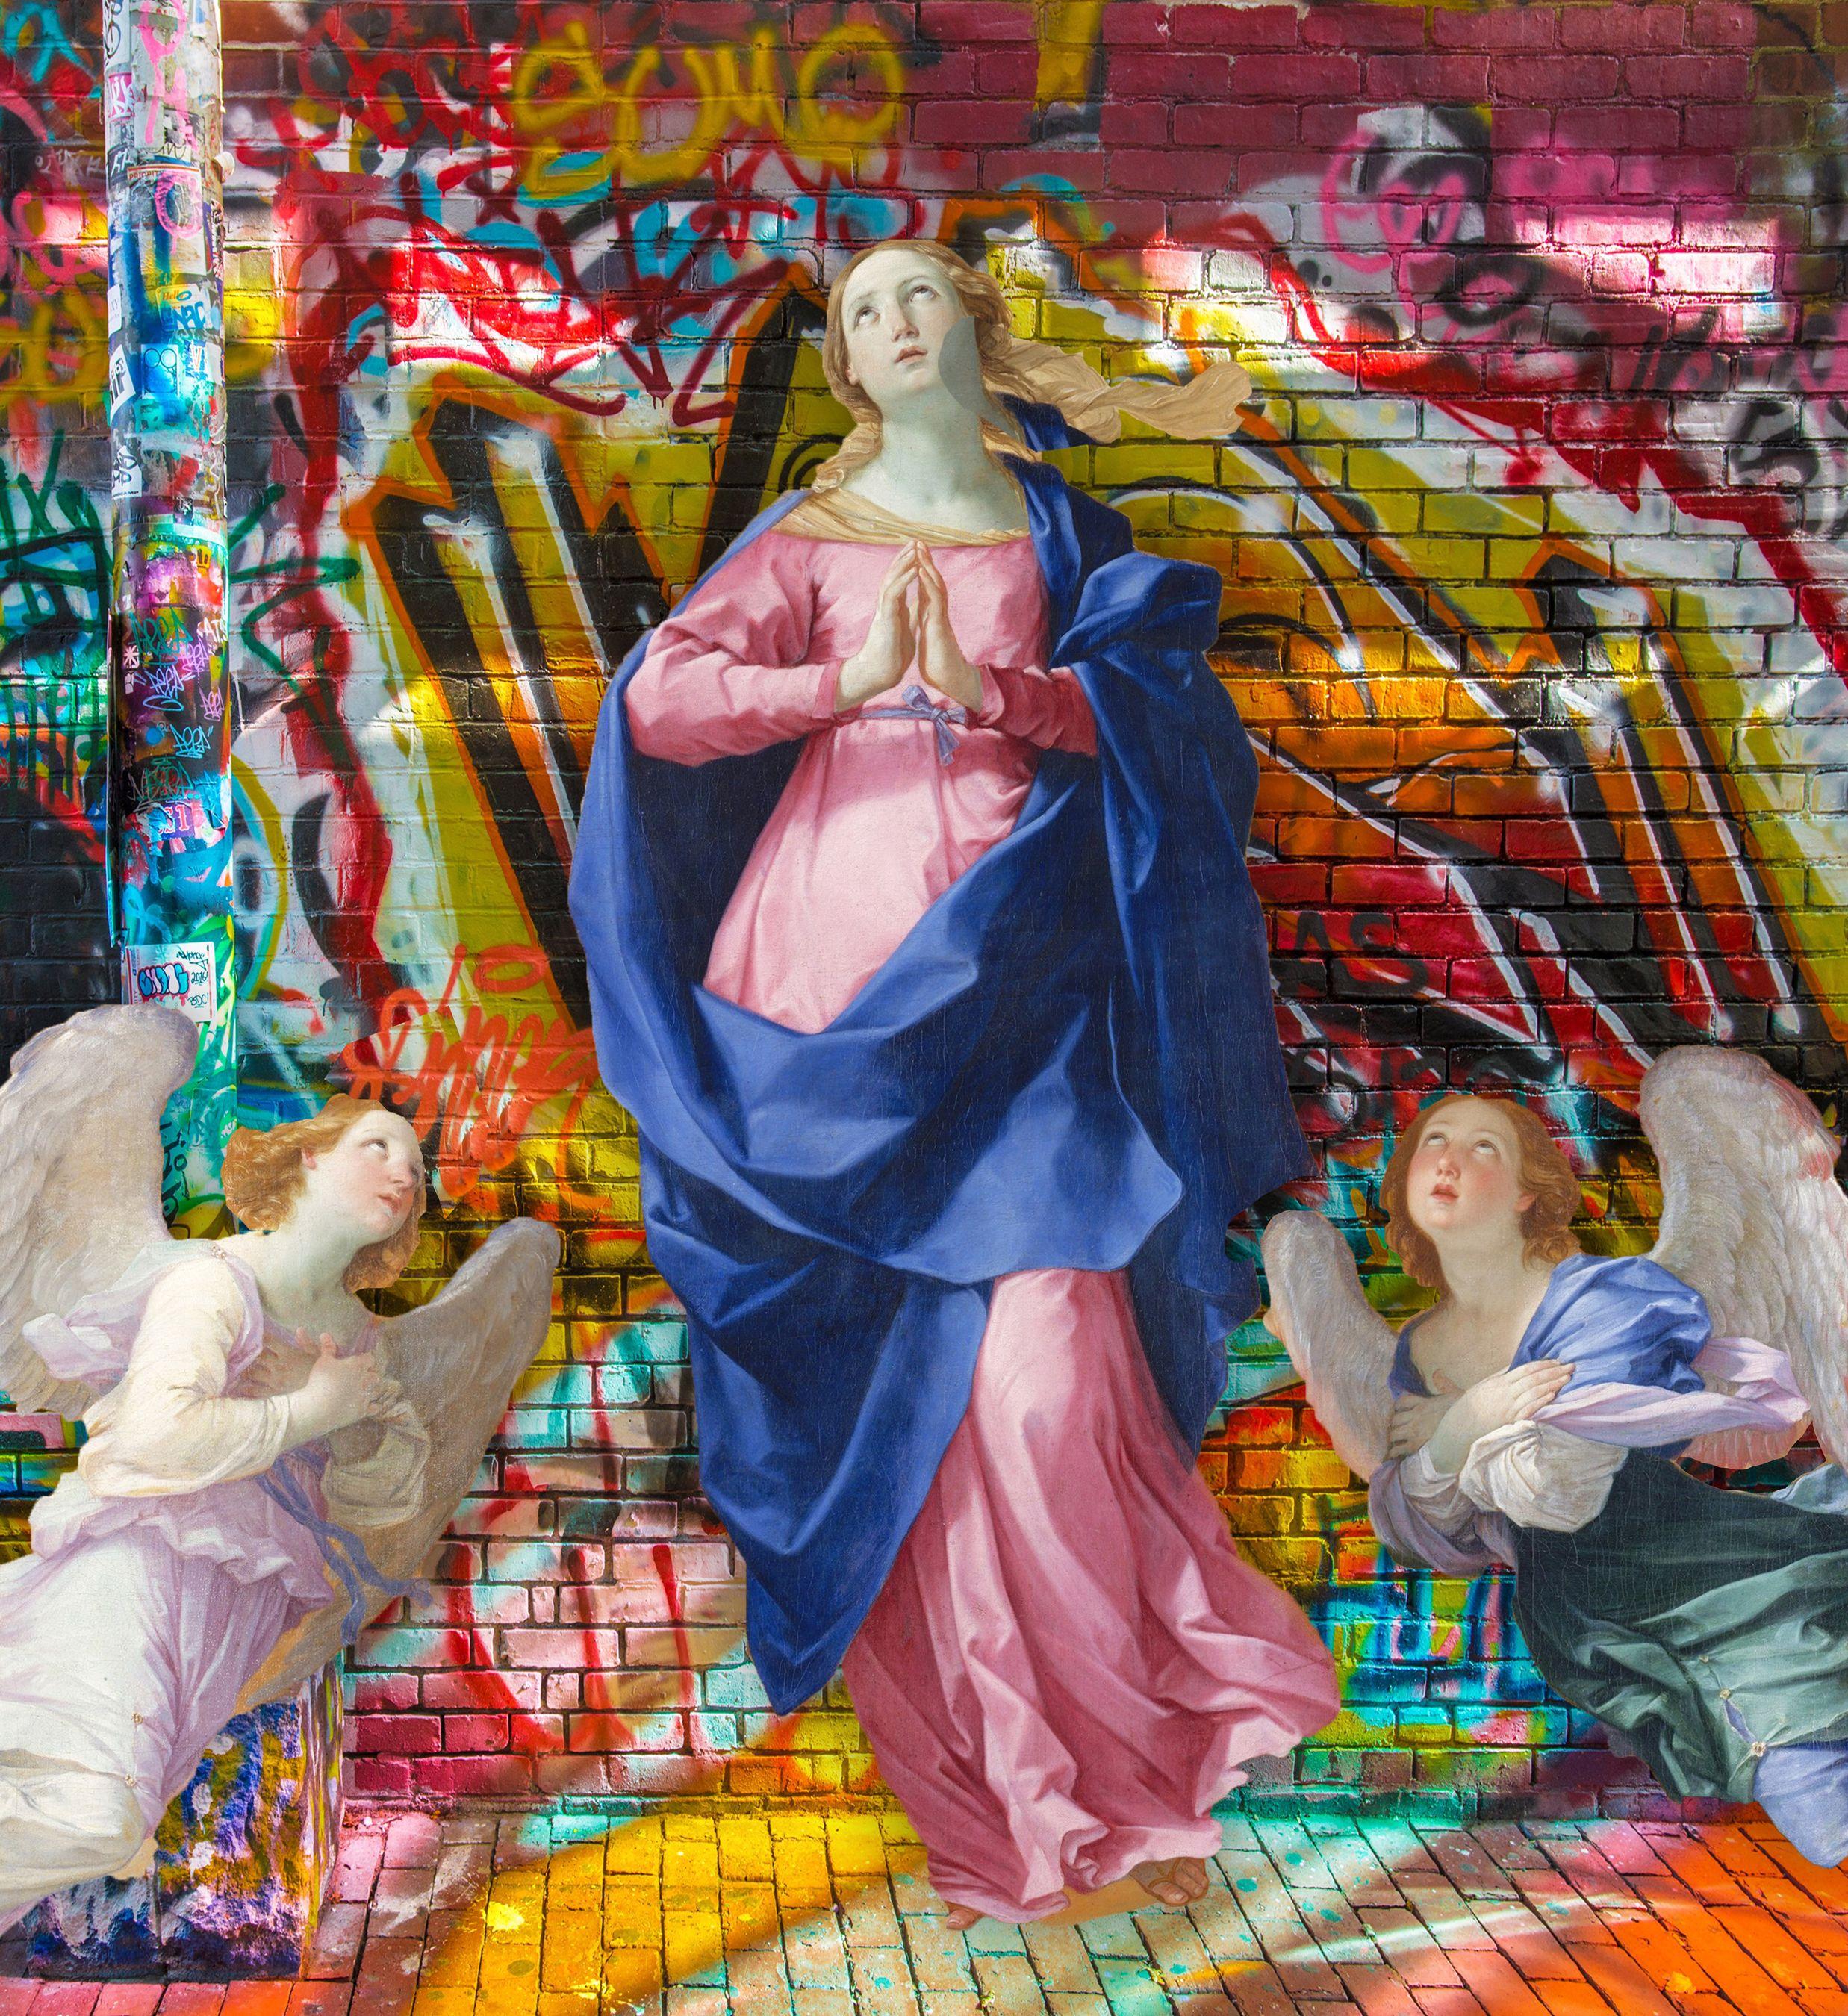 graffiti Saint Woman, Mixed Media on Canvas - Mixed Media Art by Tony Rubino